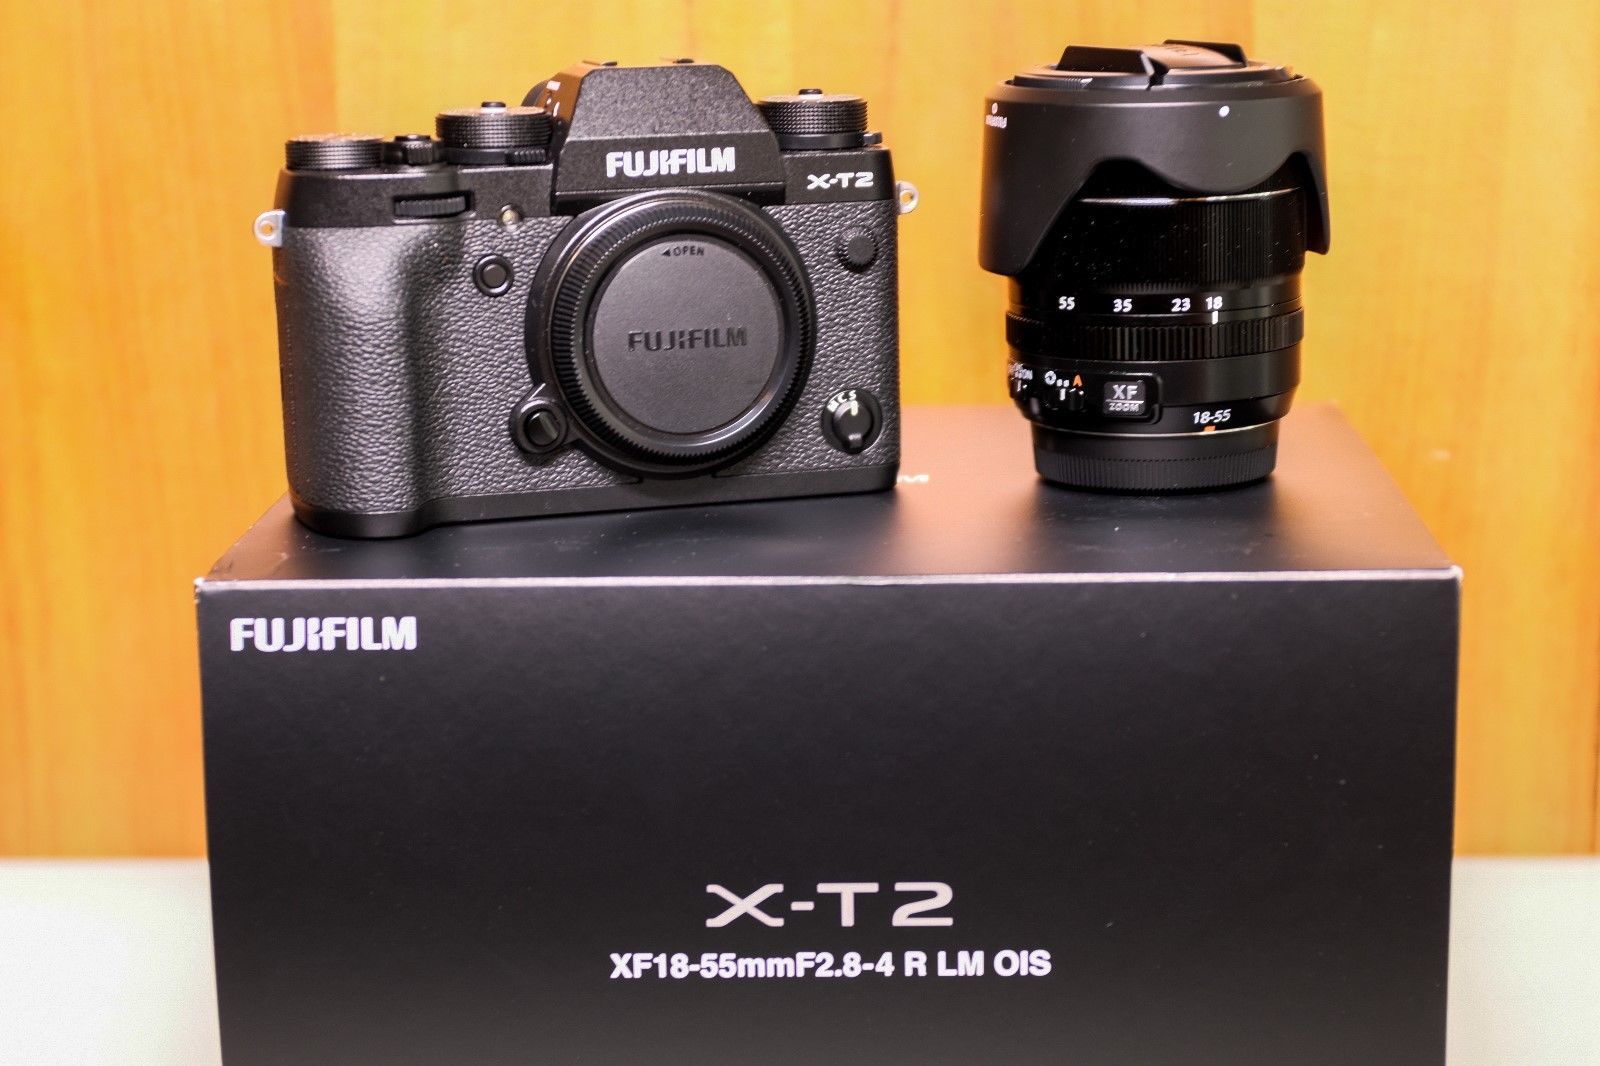 Fujifilm X-T2 Digital-Kamera Fuji 18-55mm 2.8-4 LM OIS XF Objektiv NEUWERTIG